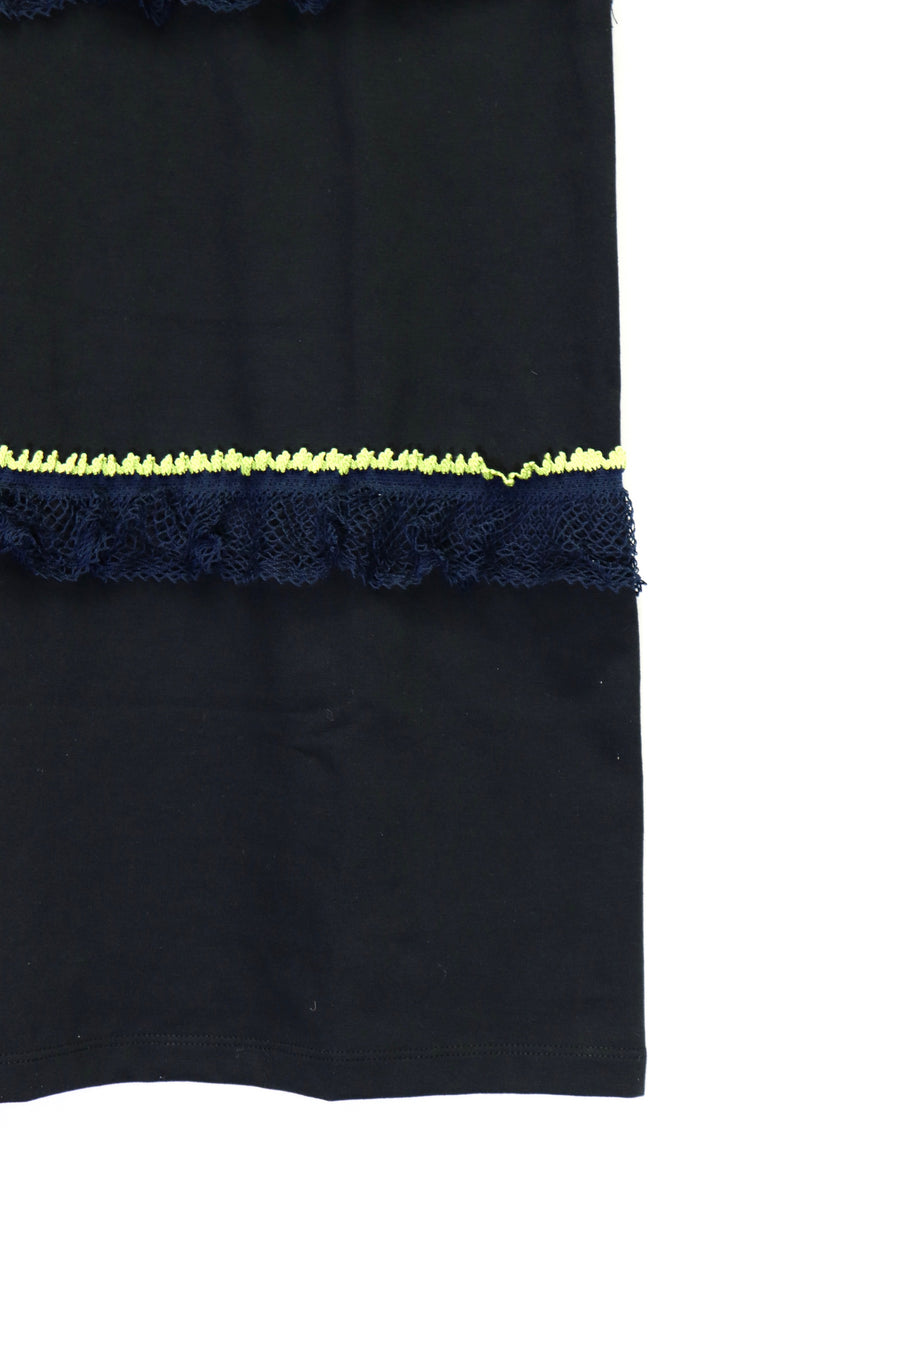 tiit tokyo  torchon lace dress(BLACK)